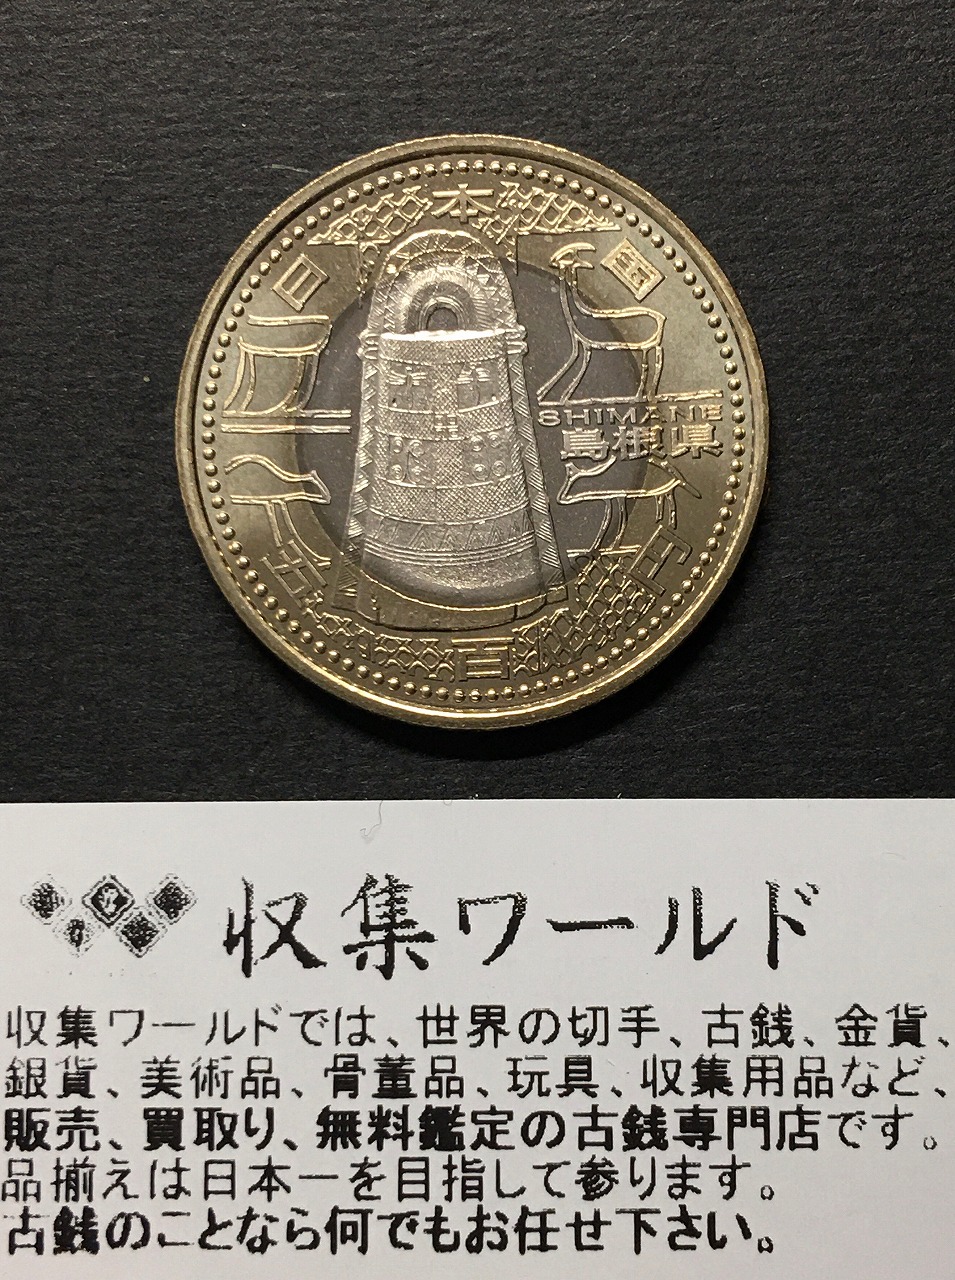 500円バイカラークラッド貨 地方自治法施行60周年記念貨幣 奈良県